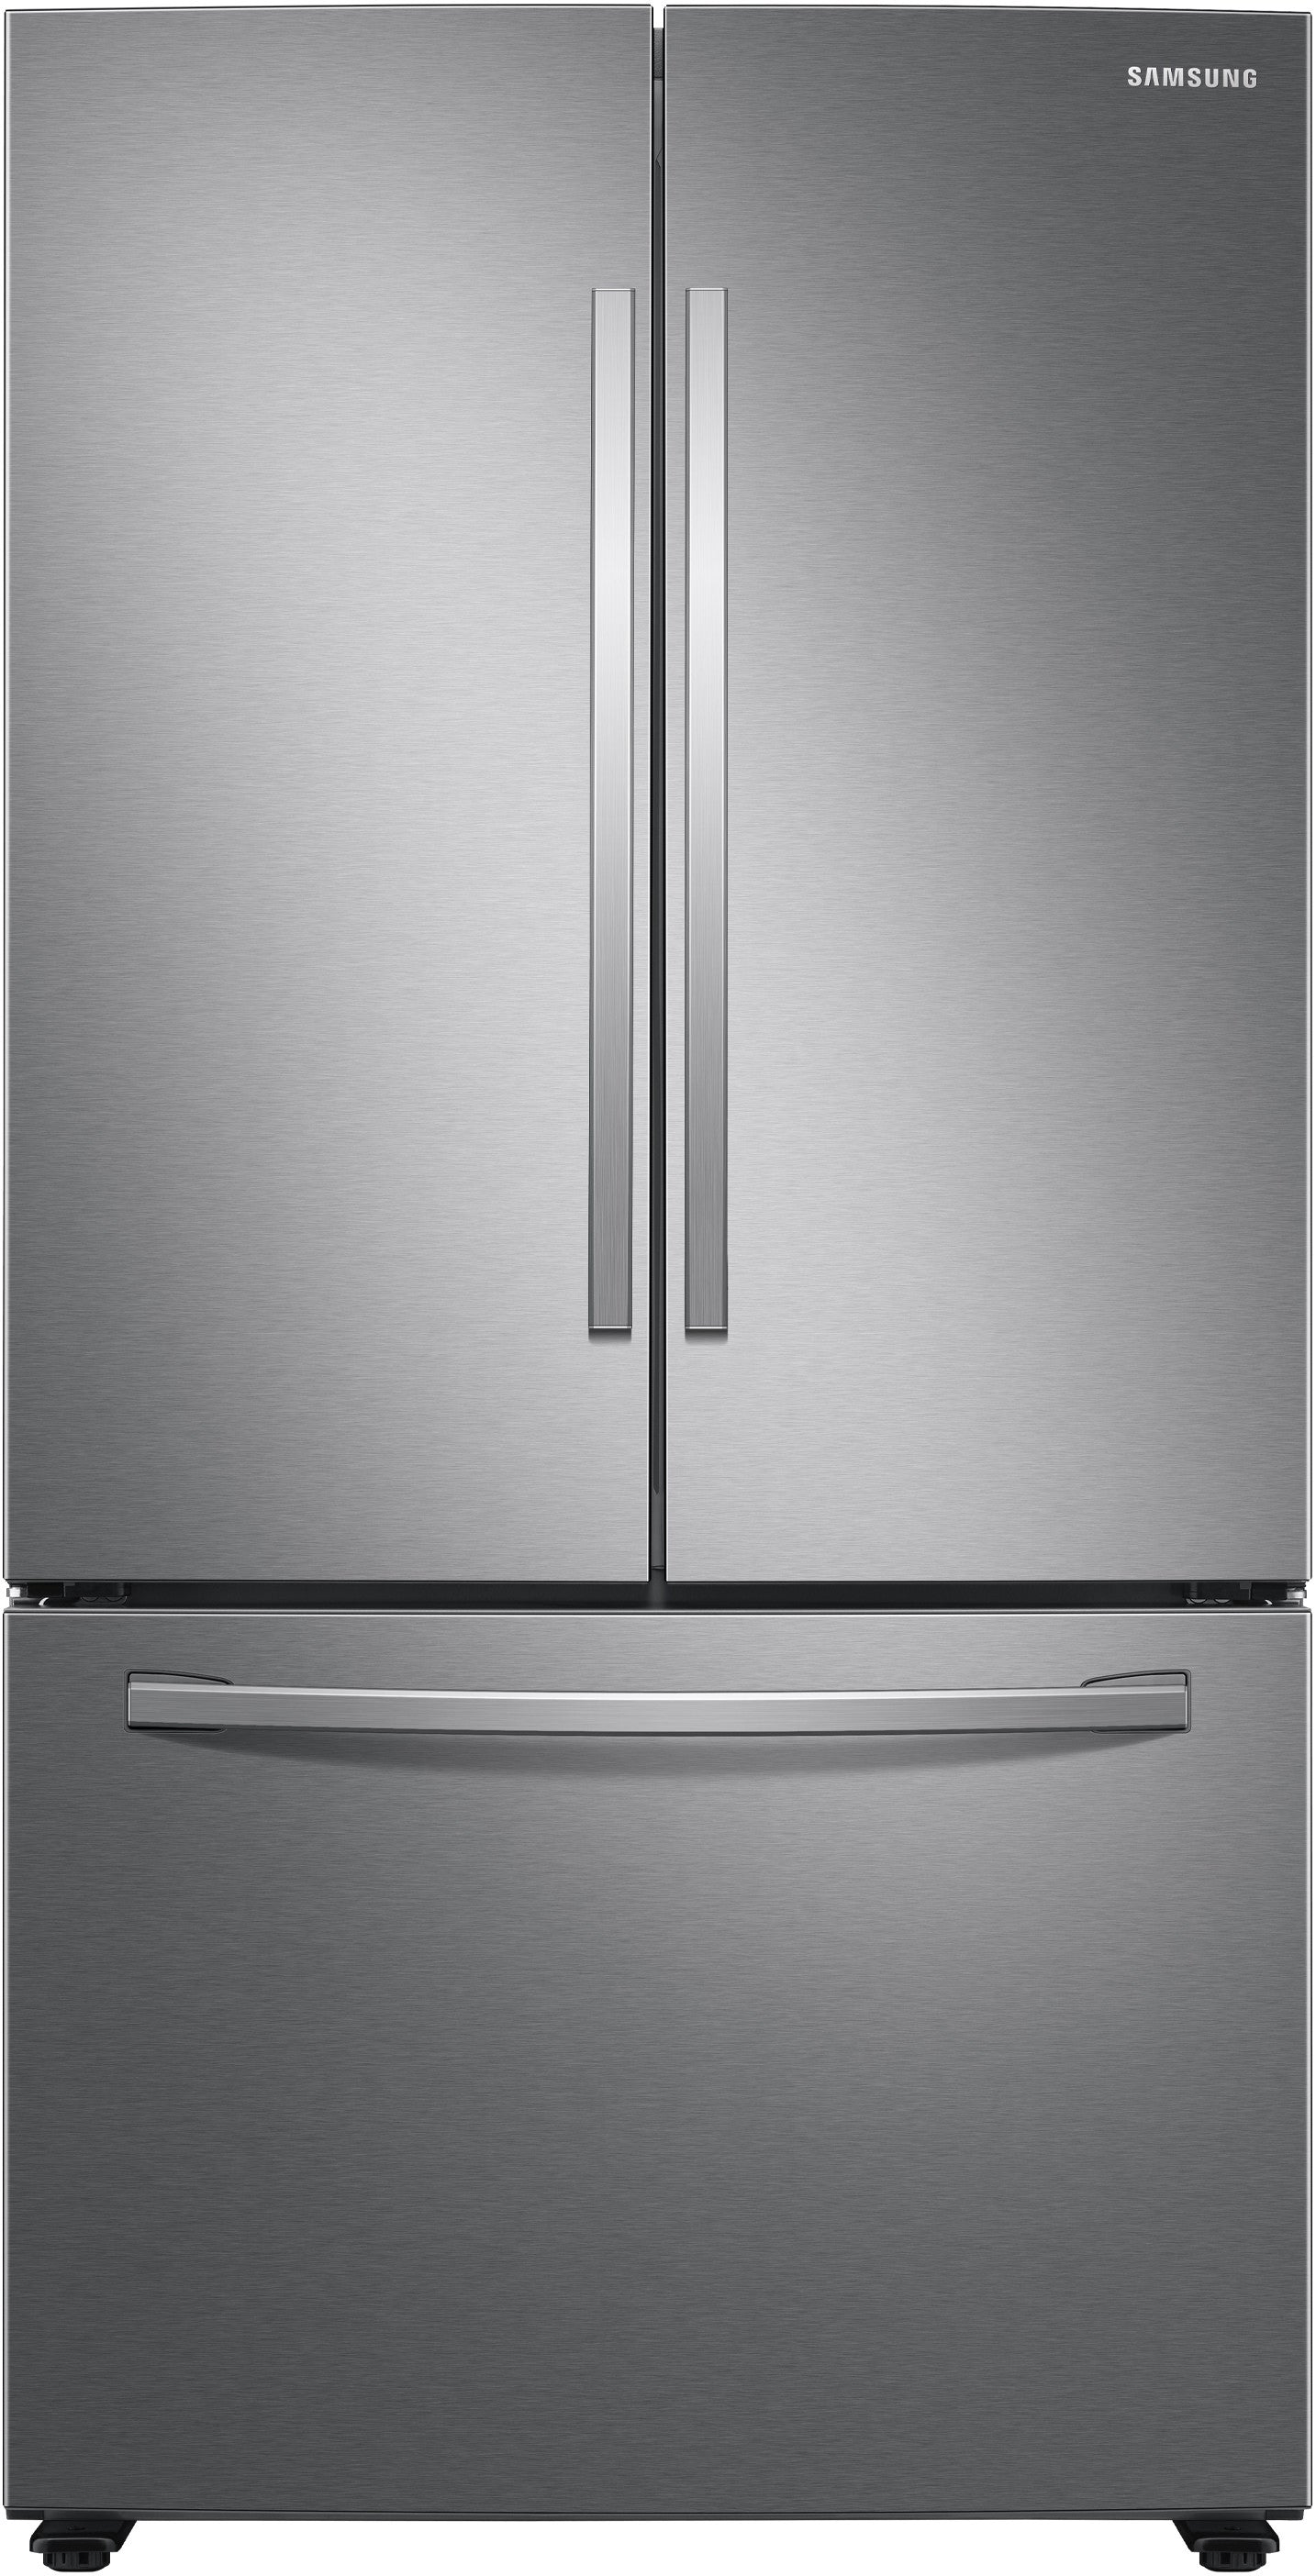 Samsung RF28T5101SR/AA 28 Cu.ft. Capacity 3-Door French Door Refrigerator